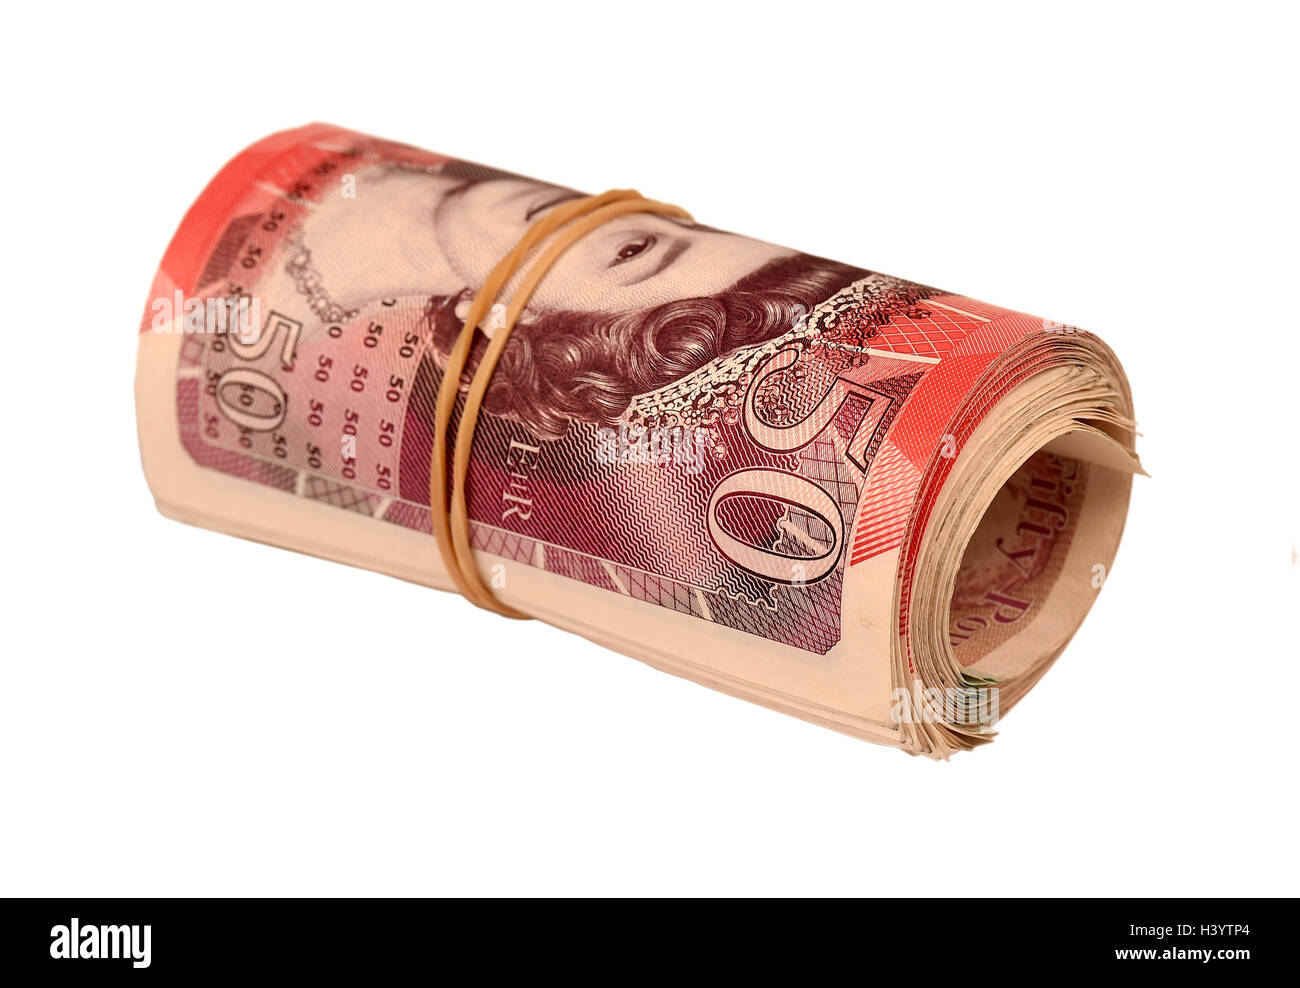 L'argent, cinquante livres, notes, billets de trésorerie, billets, monnaie, argent sterling, "British" "banque britannique notes" Banque D'Images